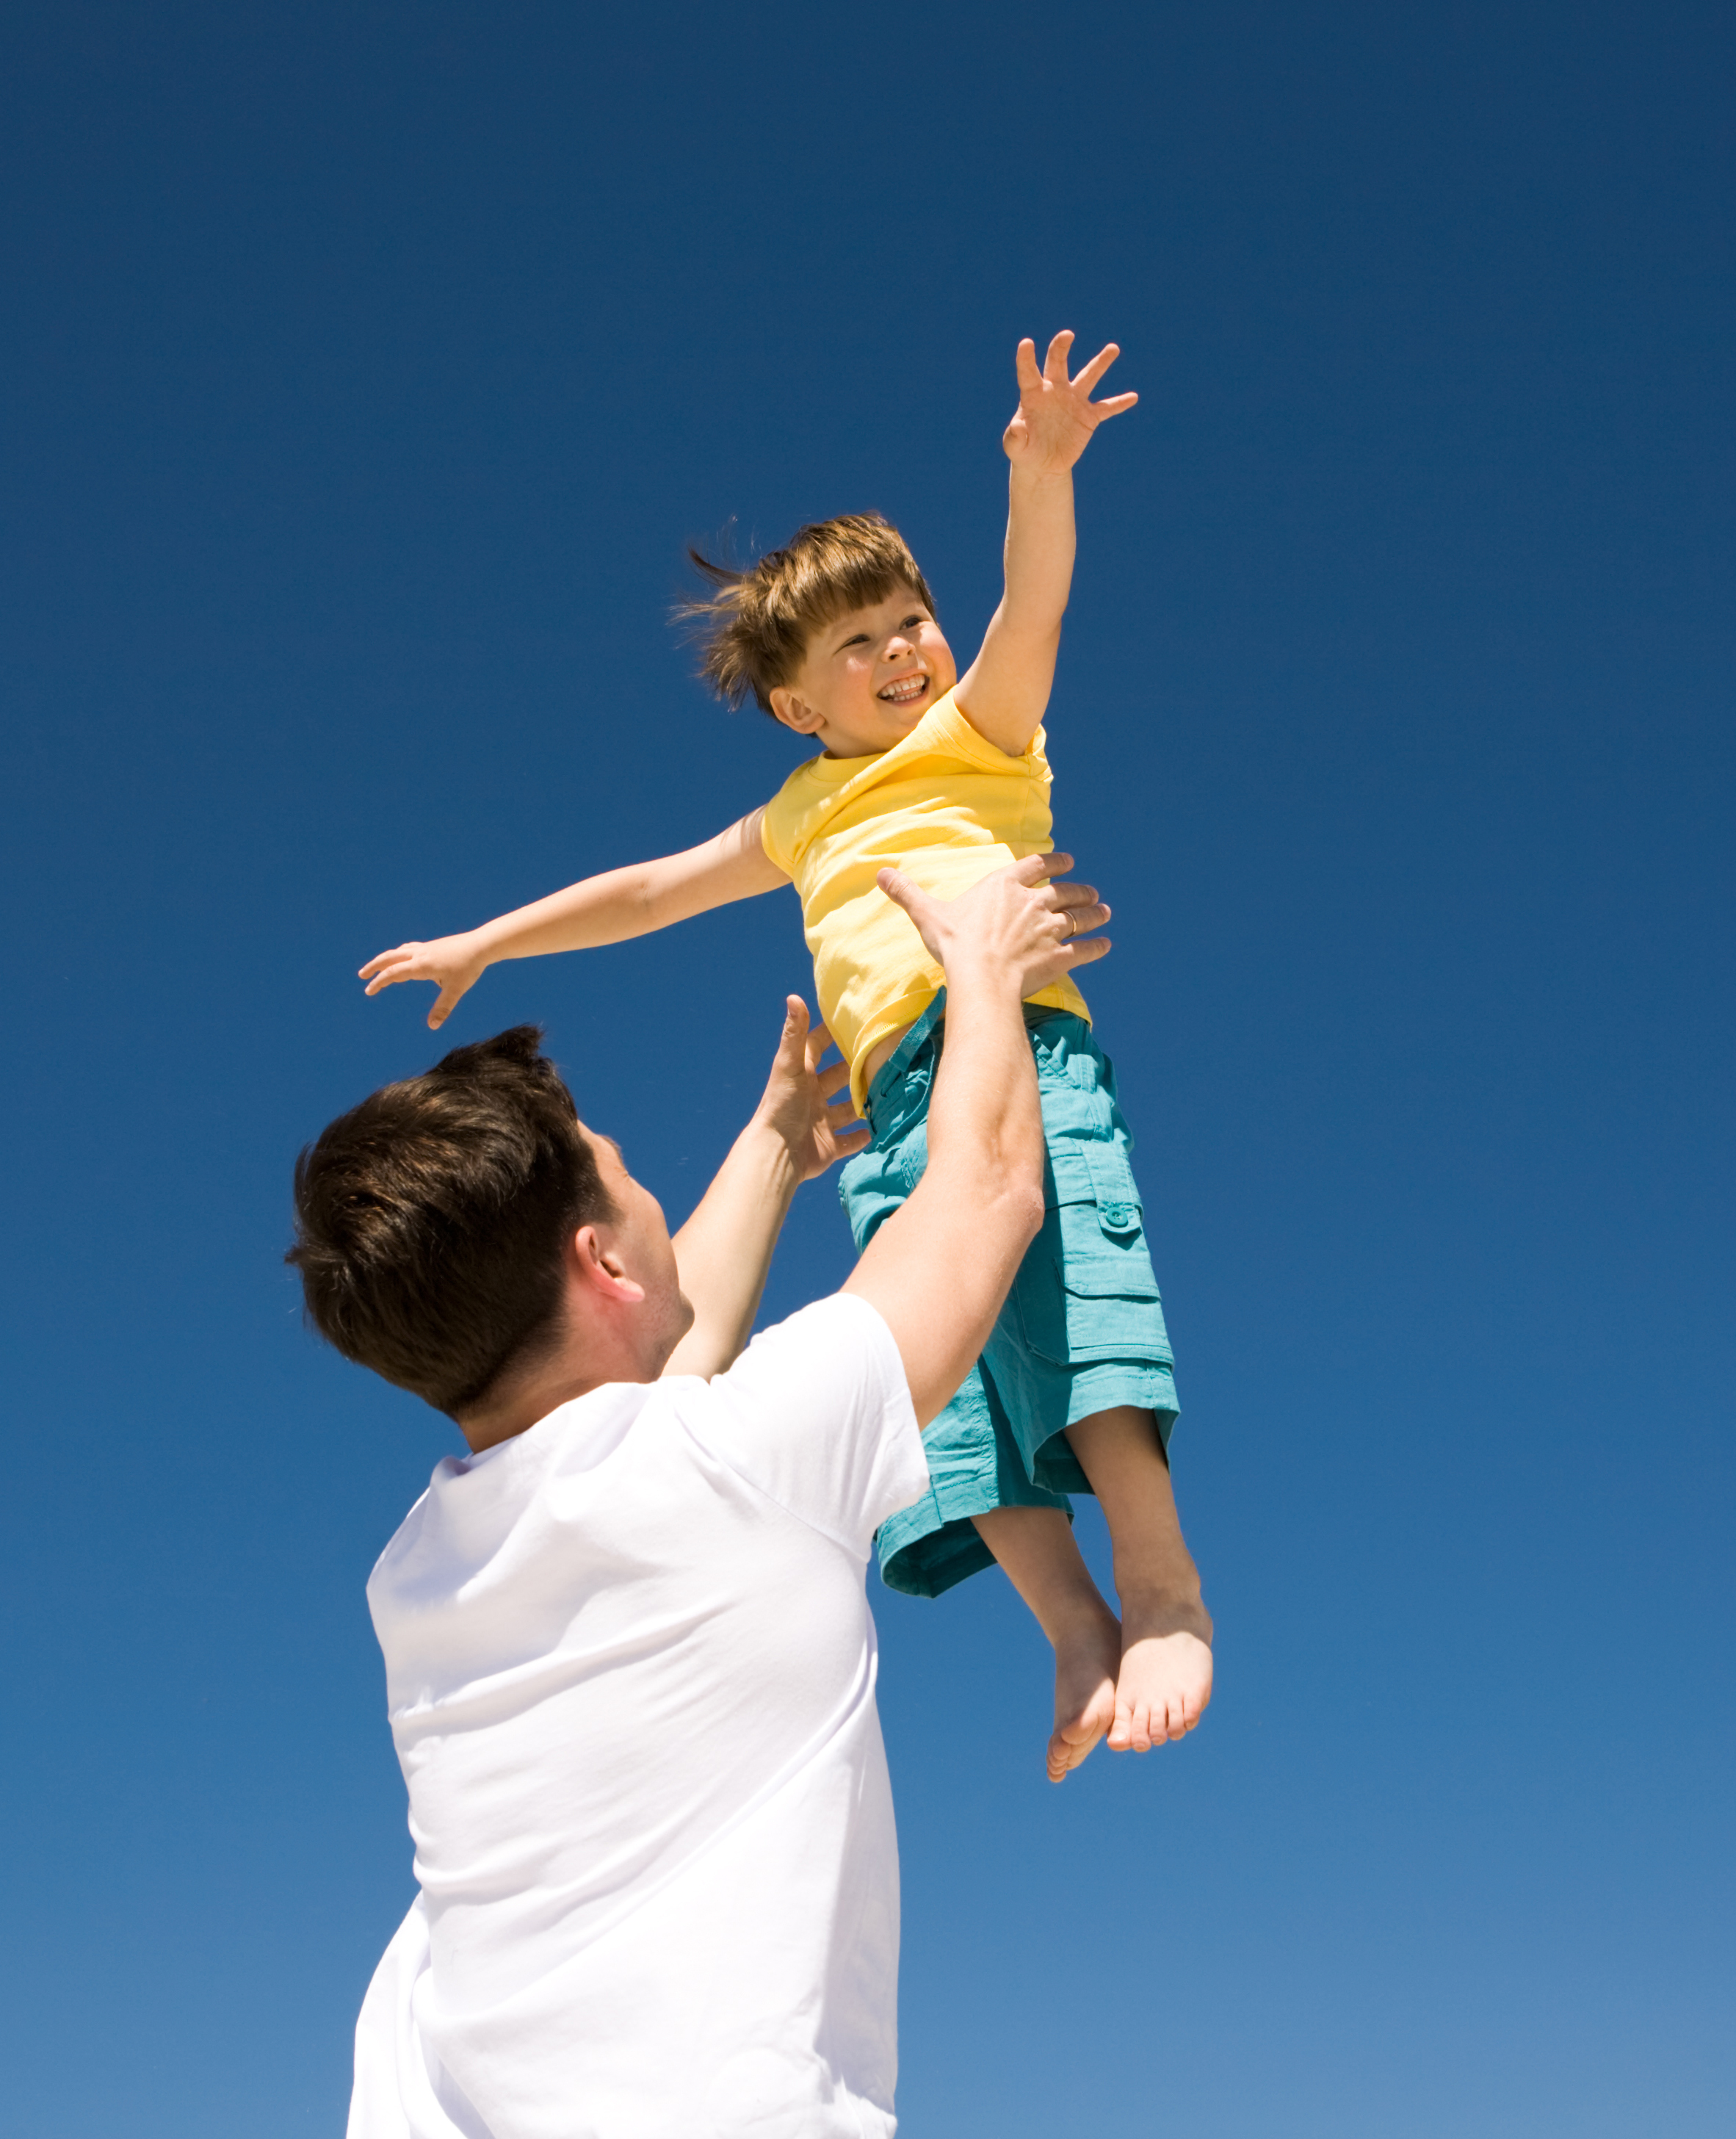 Un hombre jugando con un niño al aire libre | Fuente: Shutterstock